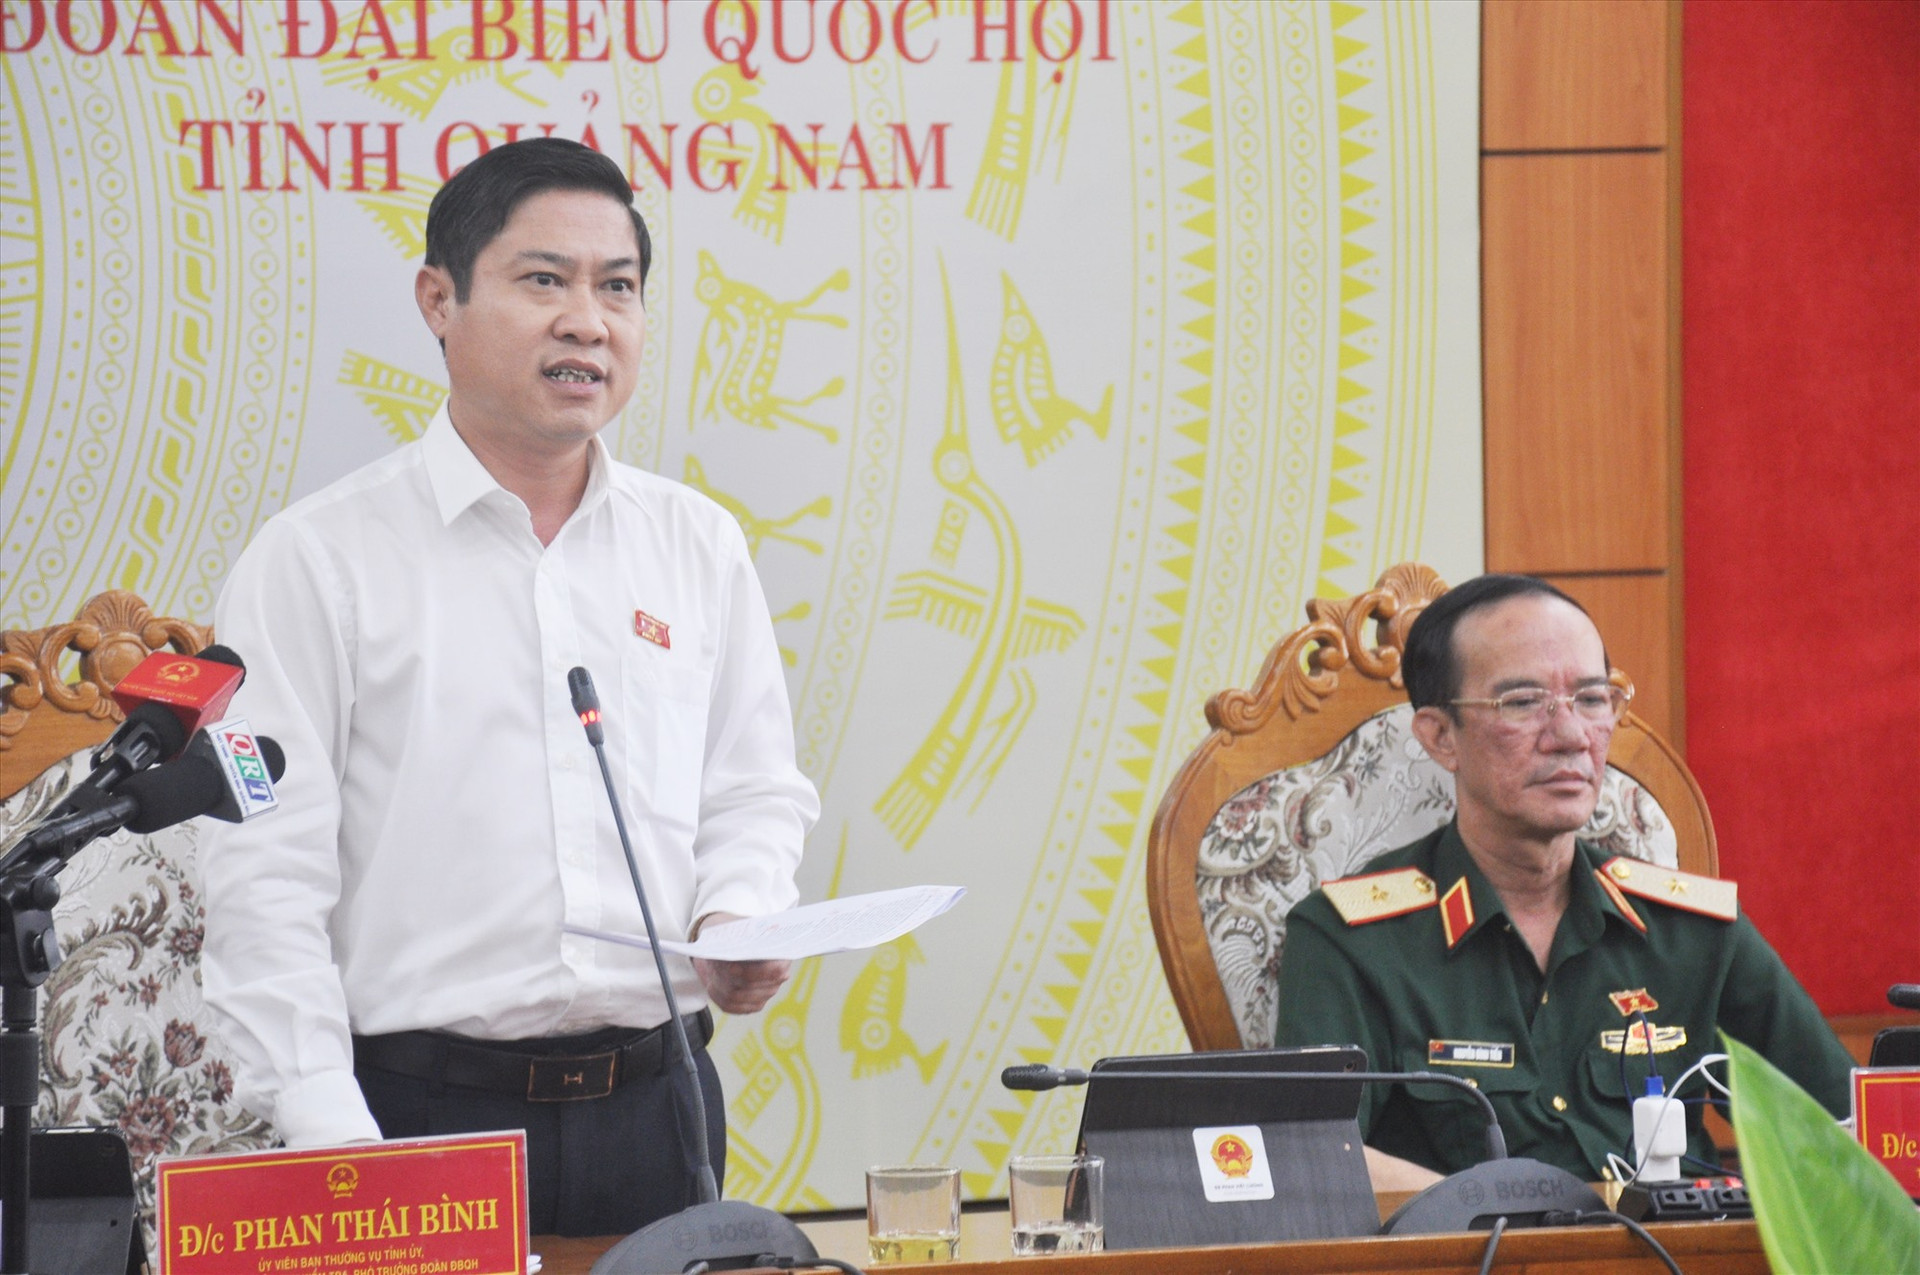 Đại biểu Quốc hội tỉnh Phan Thái Bình phát biểu thảo luận về dự thảo Luật sửa đổi, bổ sung một số điều của Luật Xử lý vi phạm hành chính. Ảnh: N.Đ